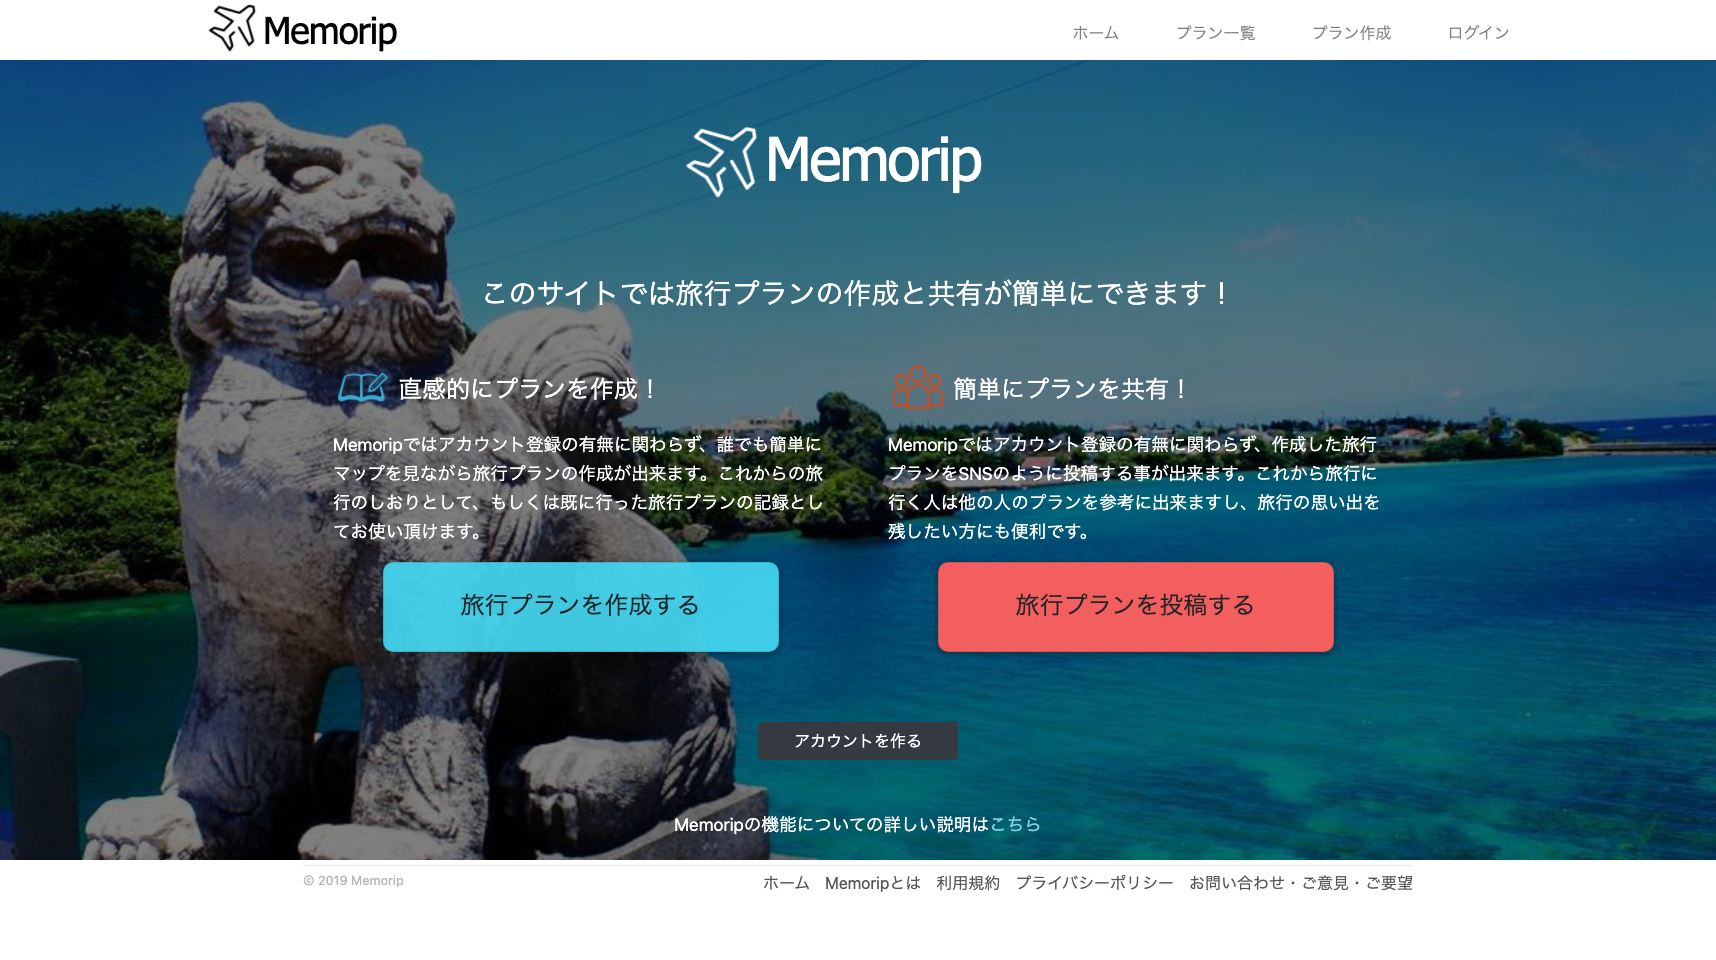 「旅行のプランを計画して共有しよう」をテーマにした旅行プラン共有サイト『Memorip』をリリース